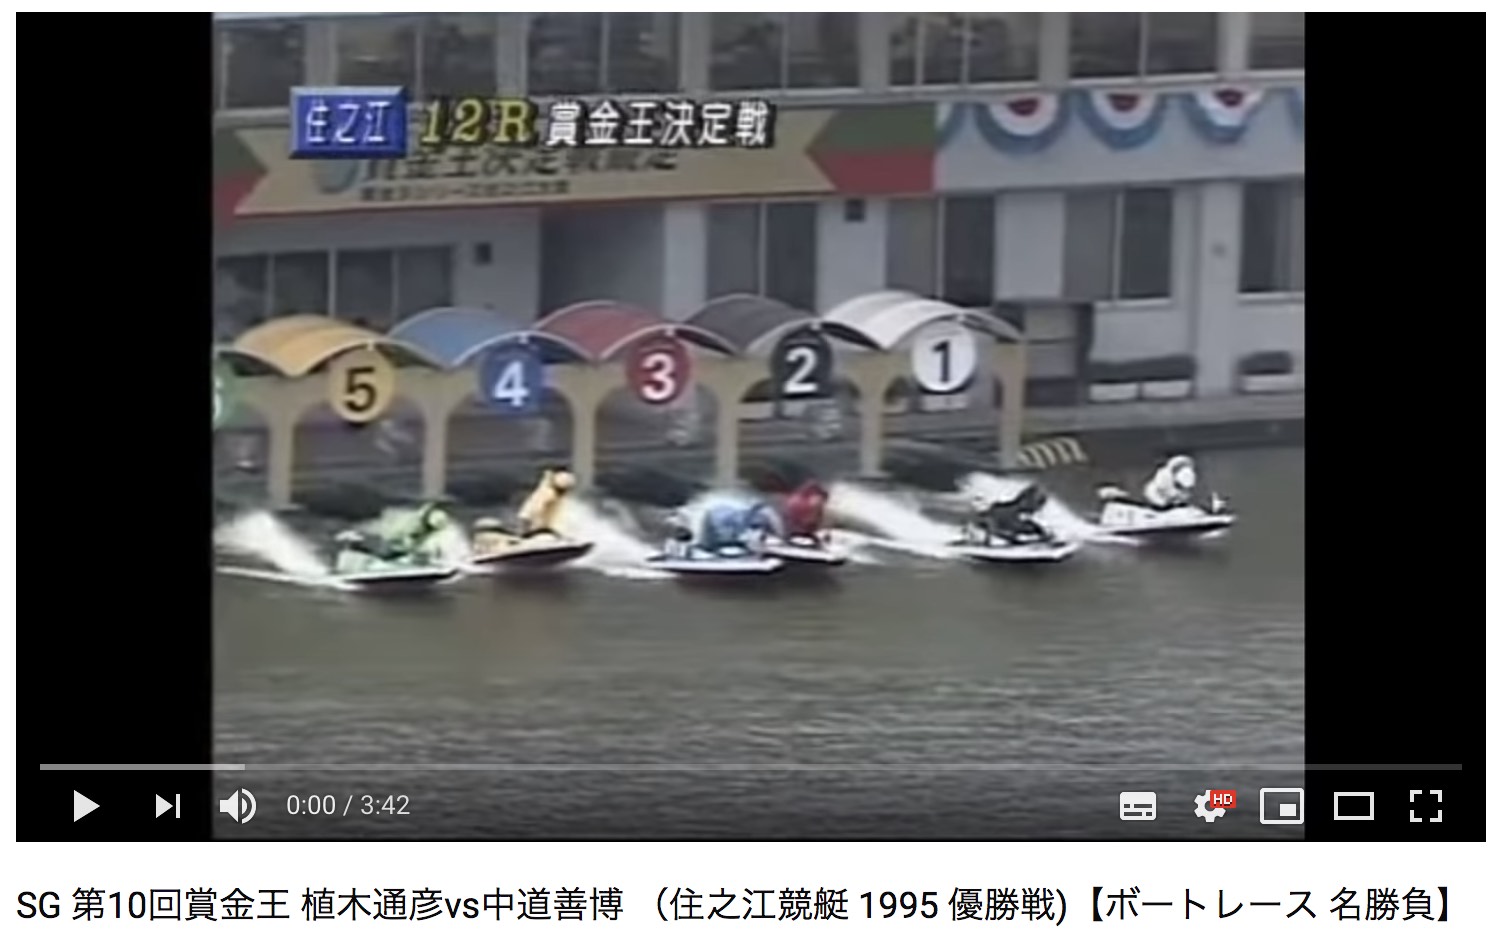 1995年 12月24日、SG 第10回賞金王グランプリ優勝戦は競艇の名勝負